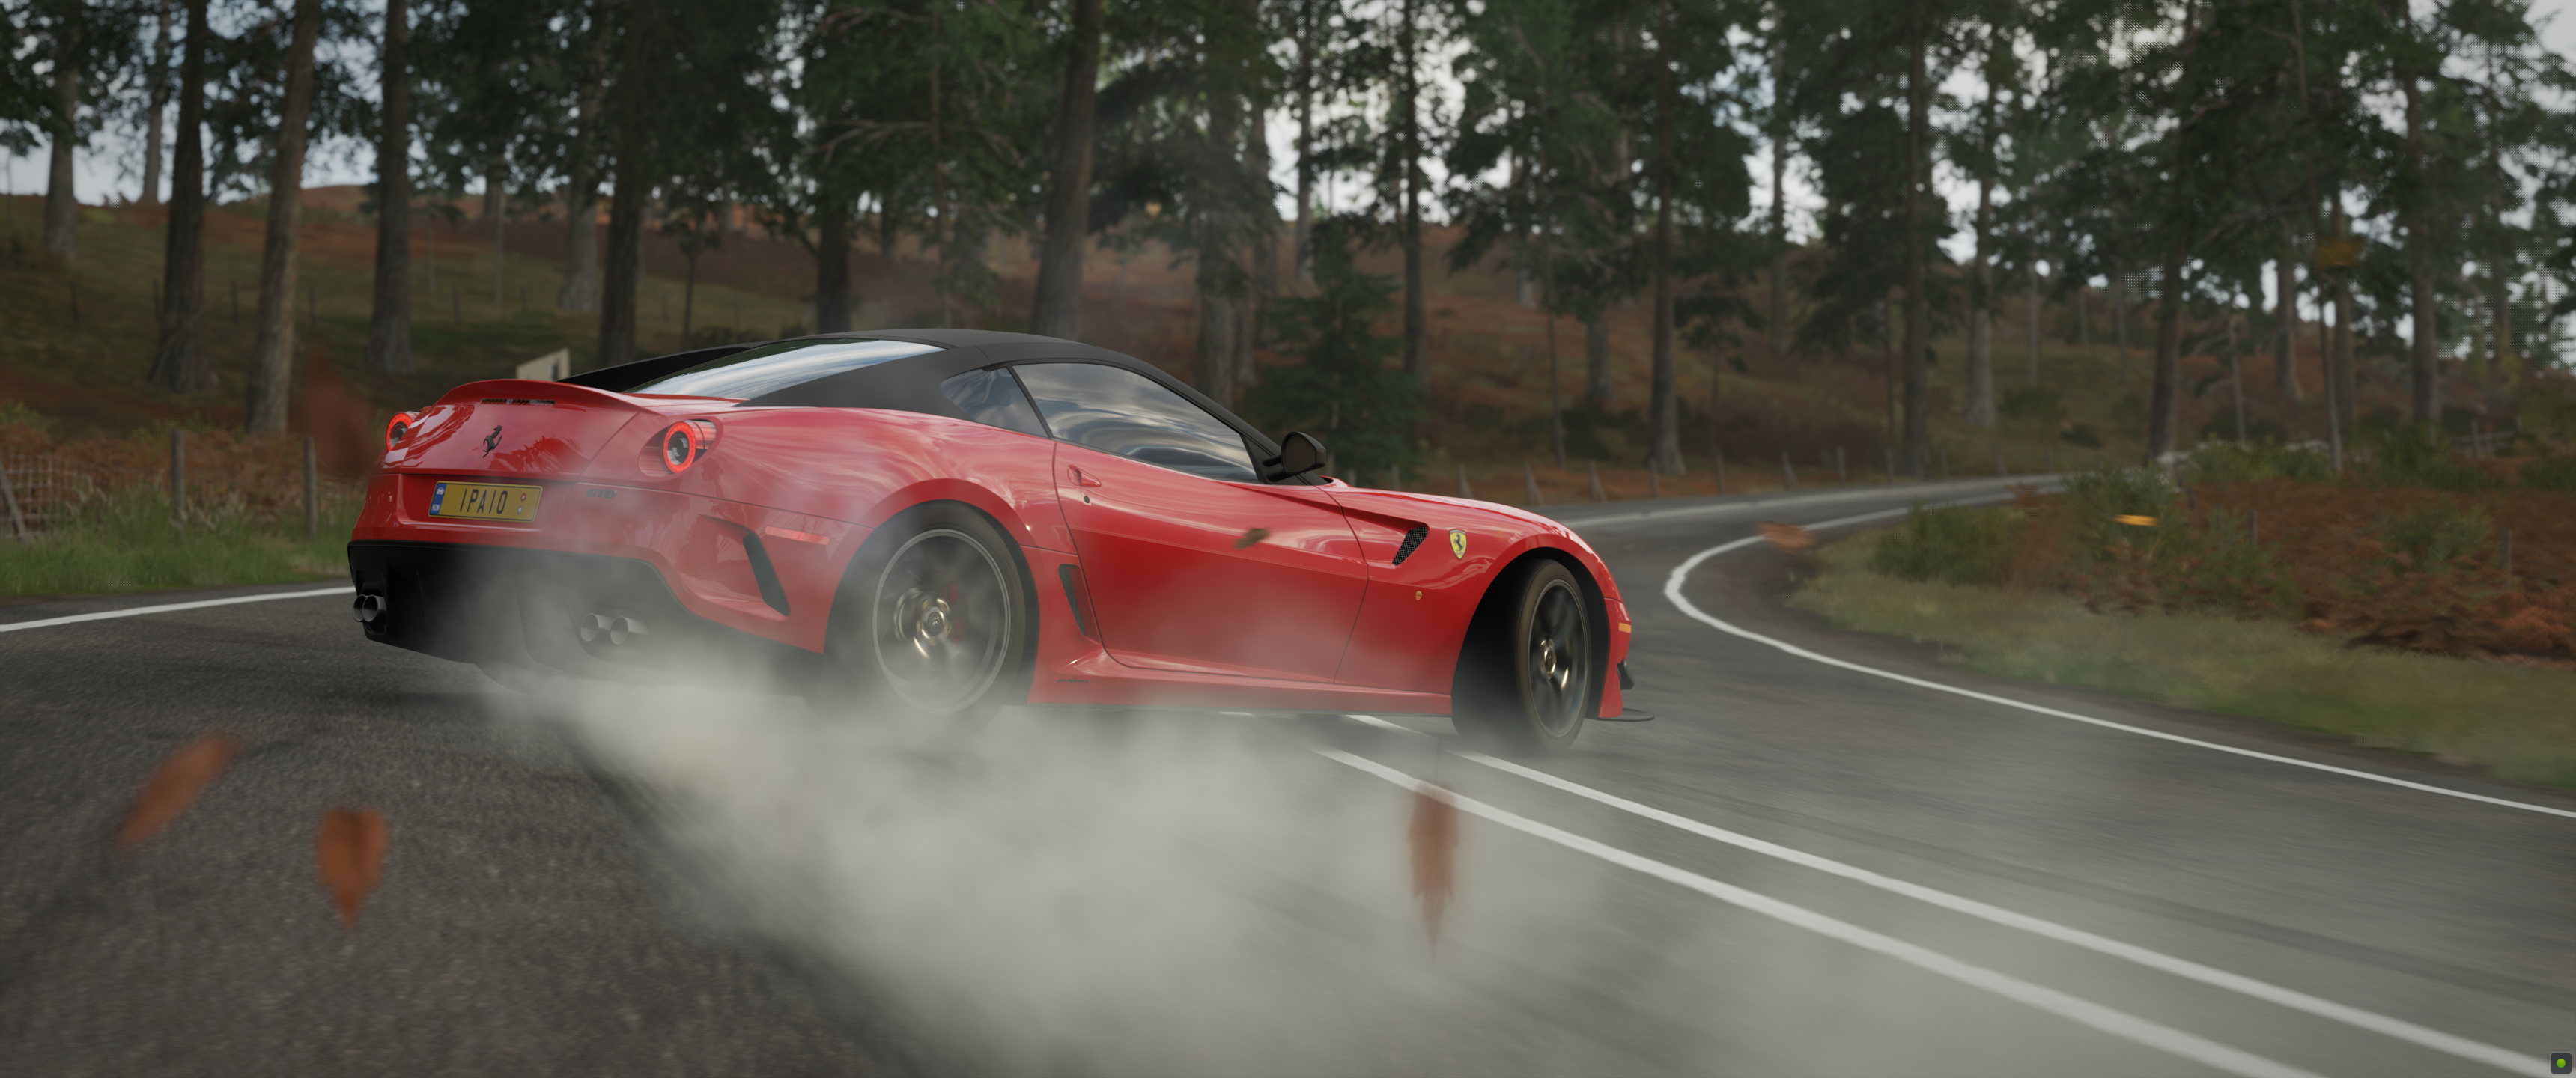 Forza Forza Horizon 4 Racing Car Ultrawide Video Games Ferrari GTO Drift 3440x1440